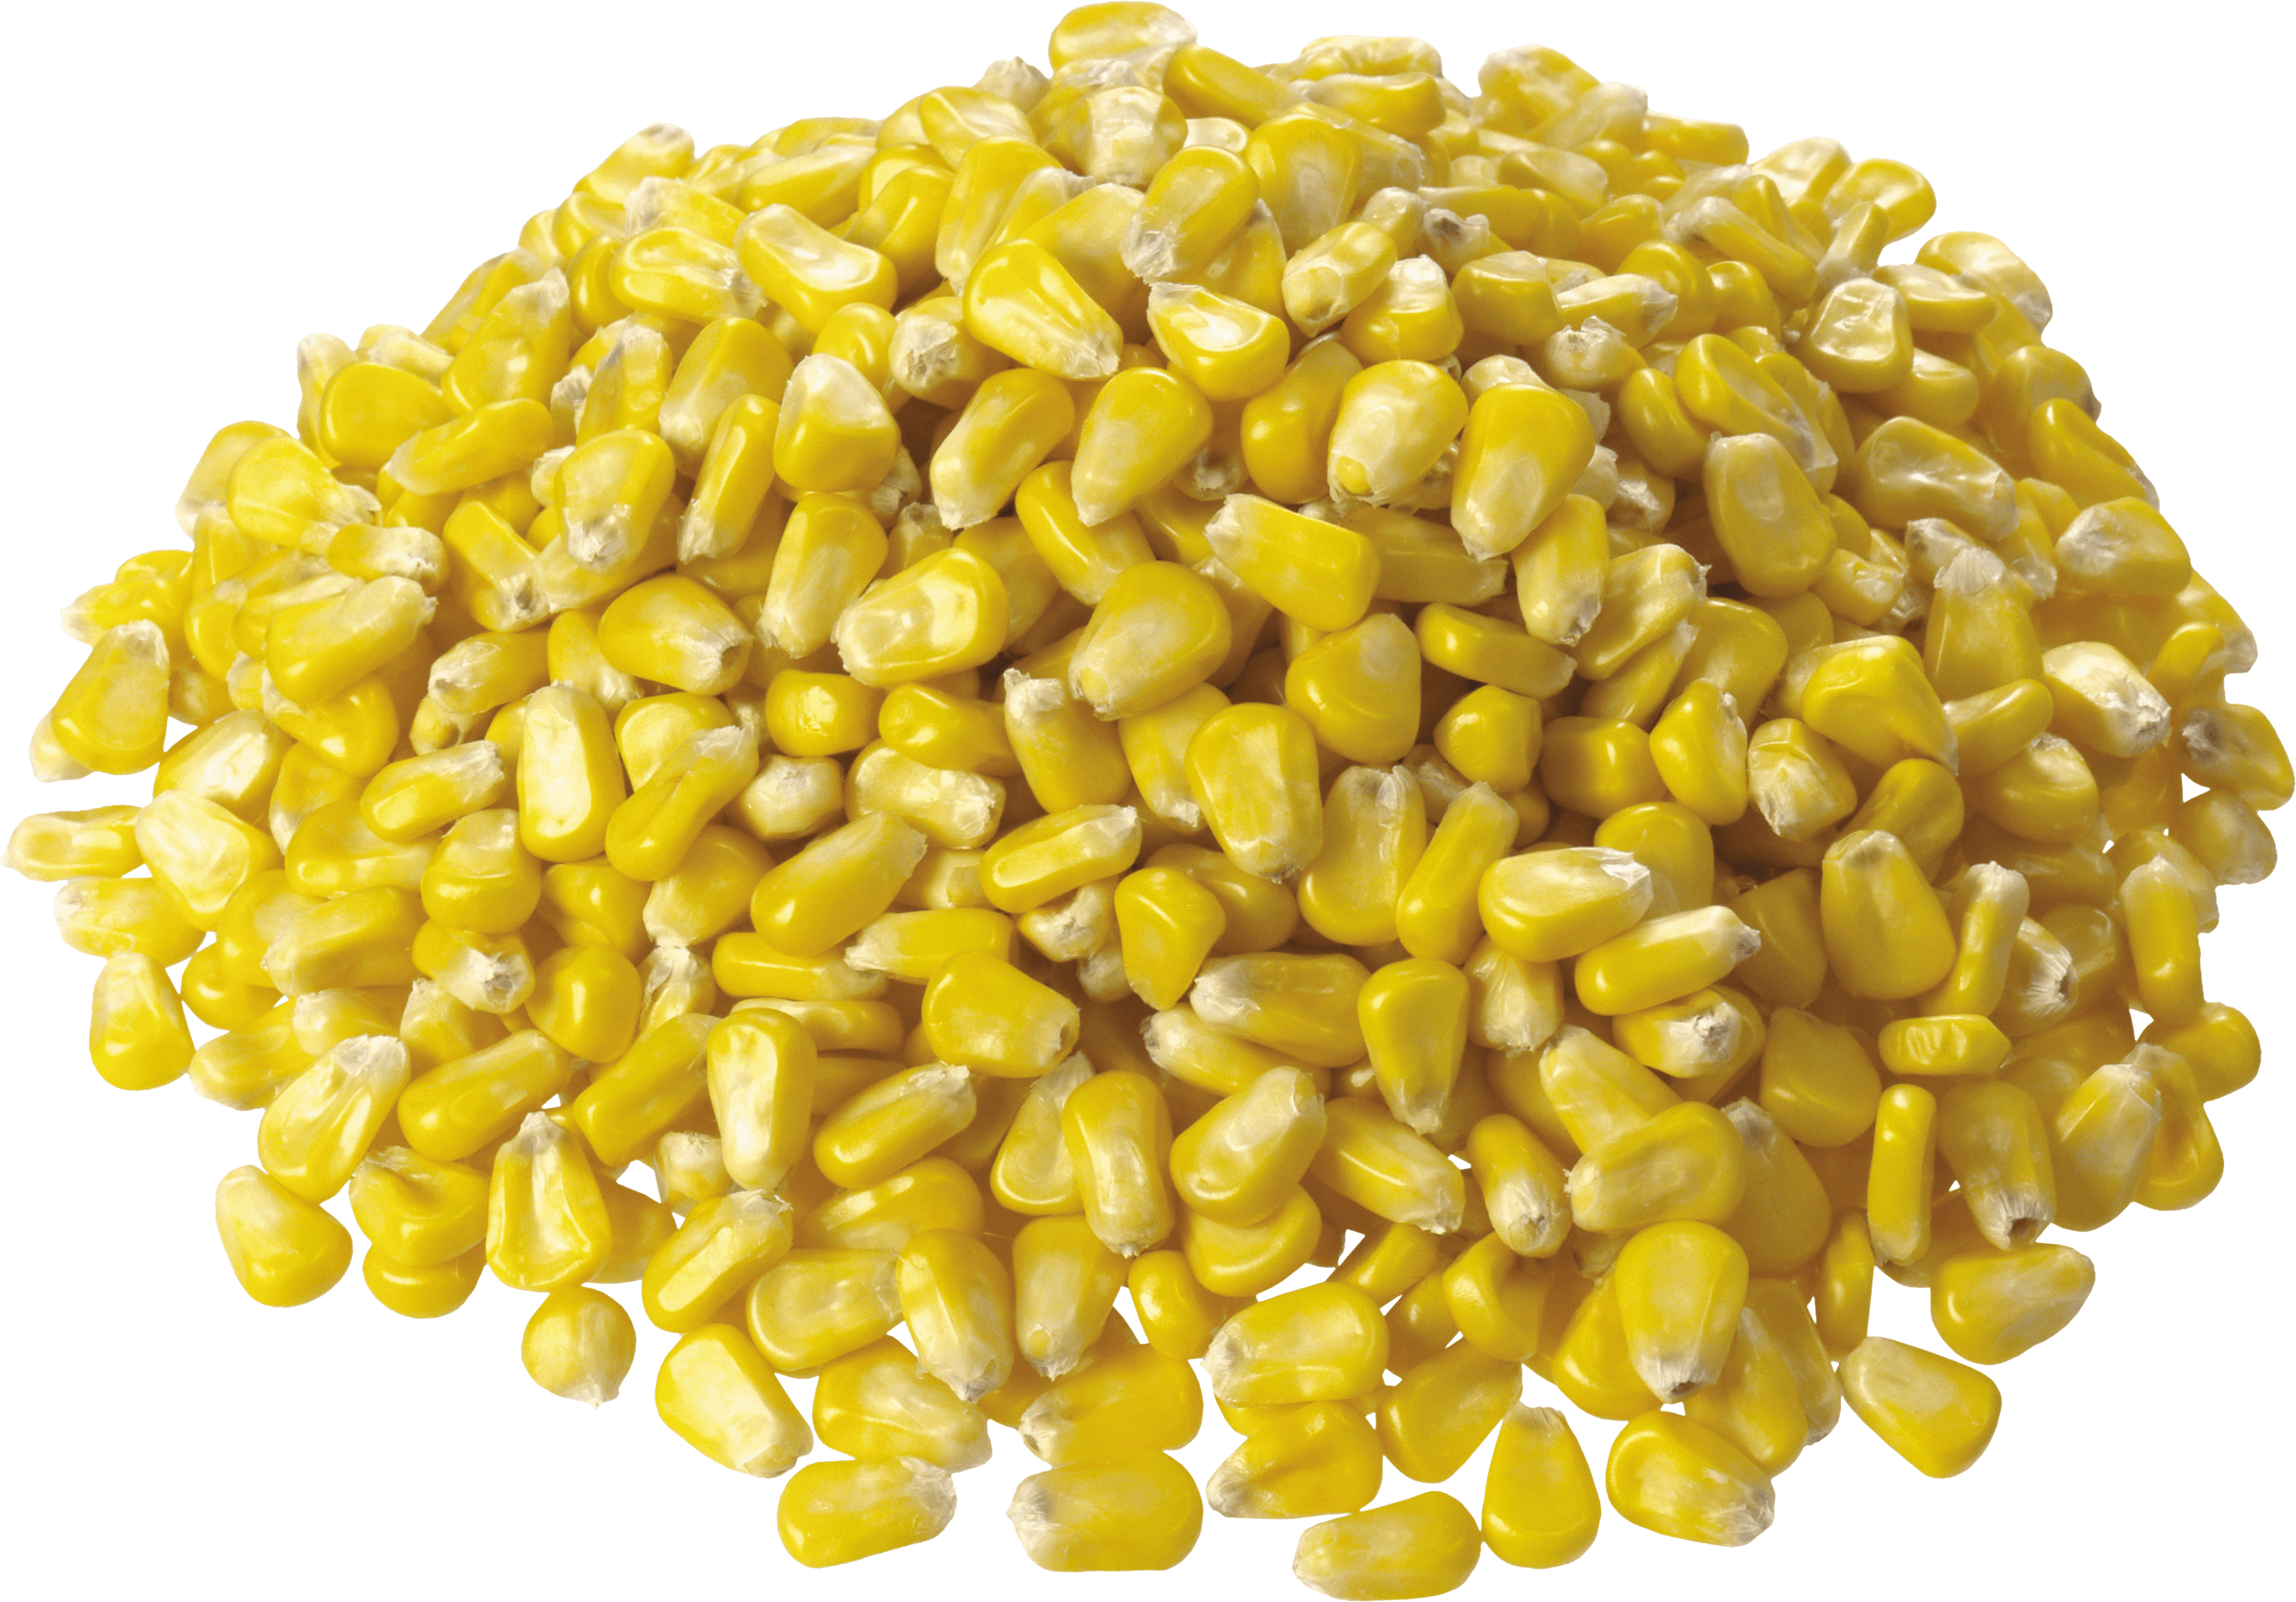 i made this corn transparent